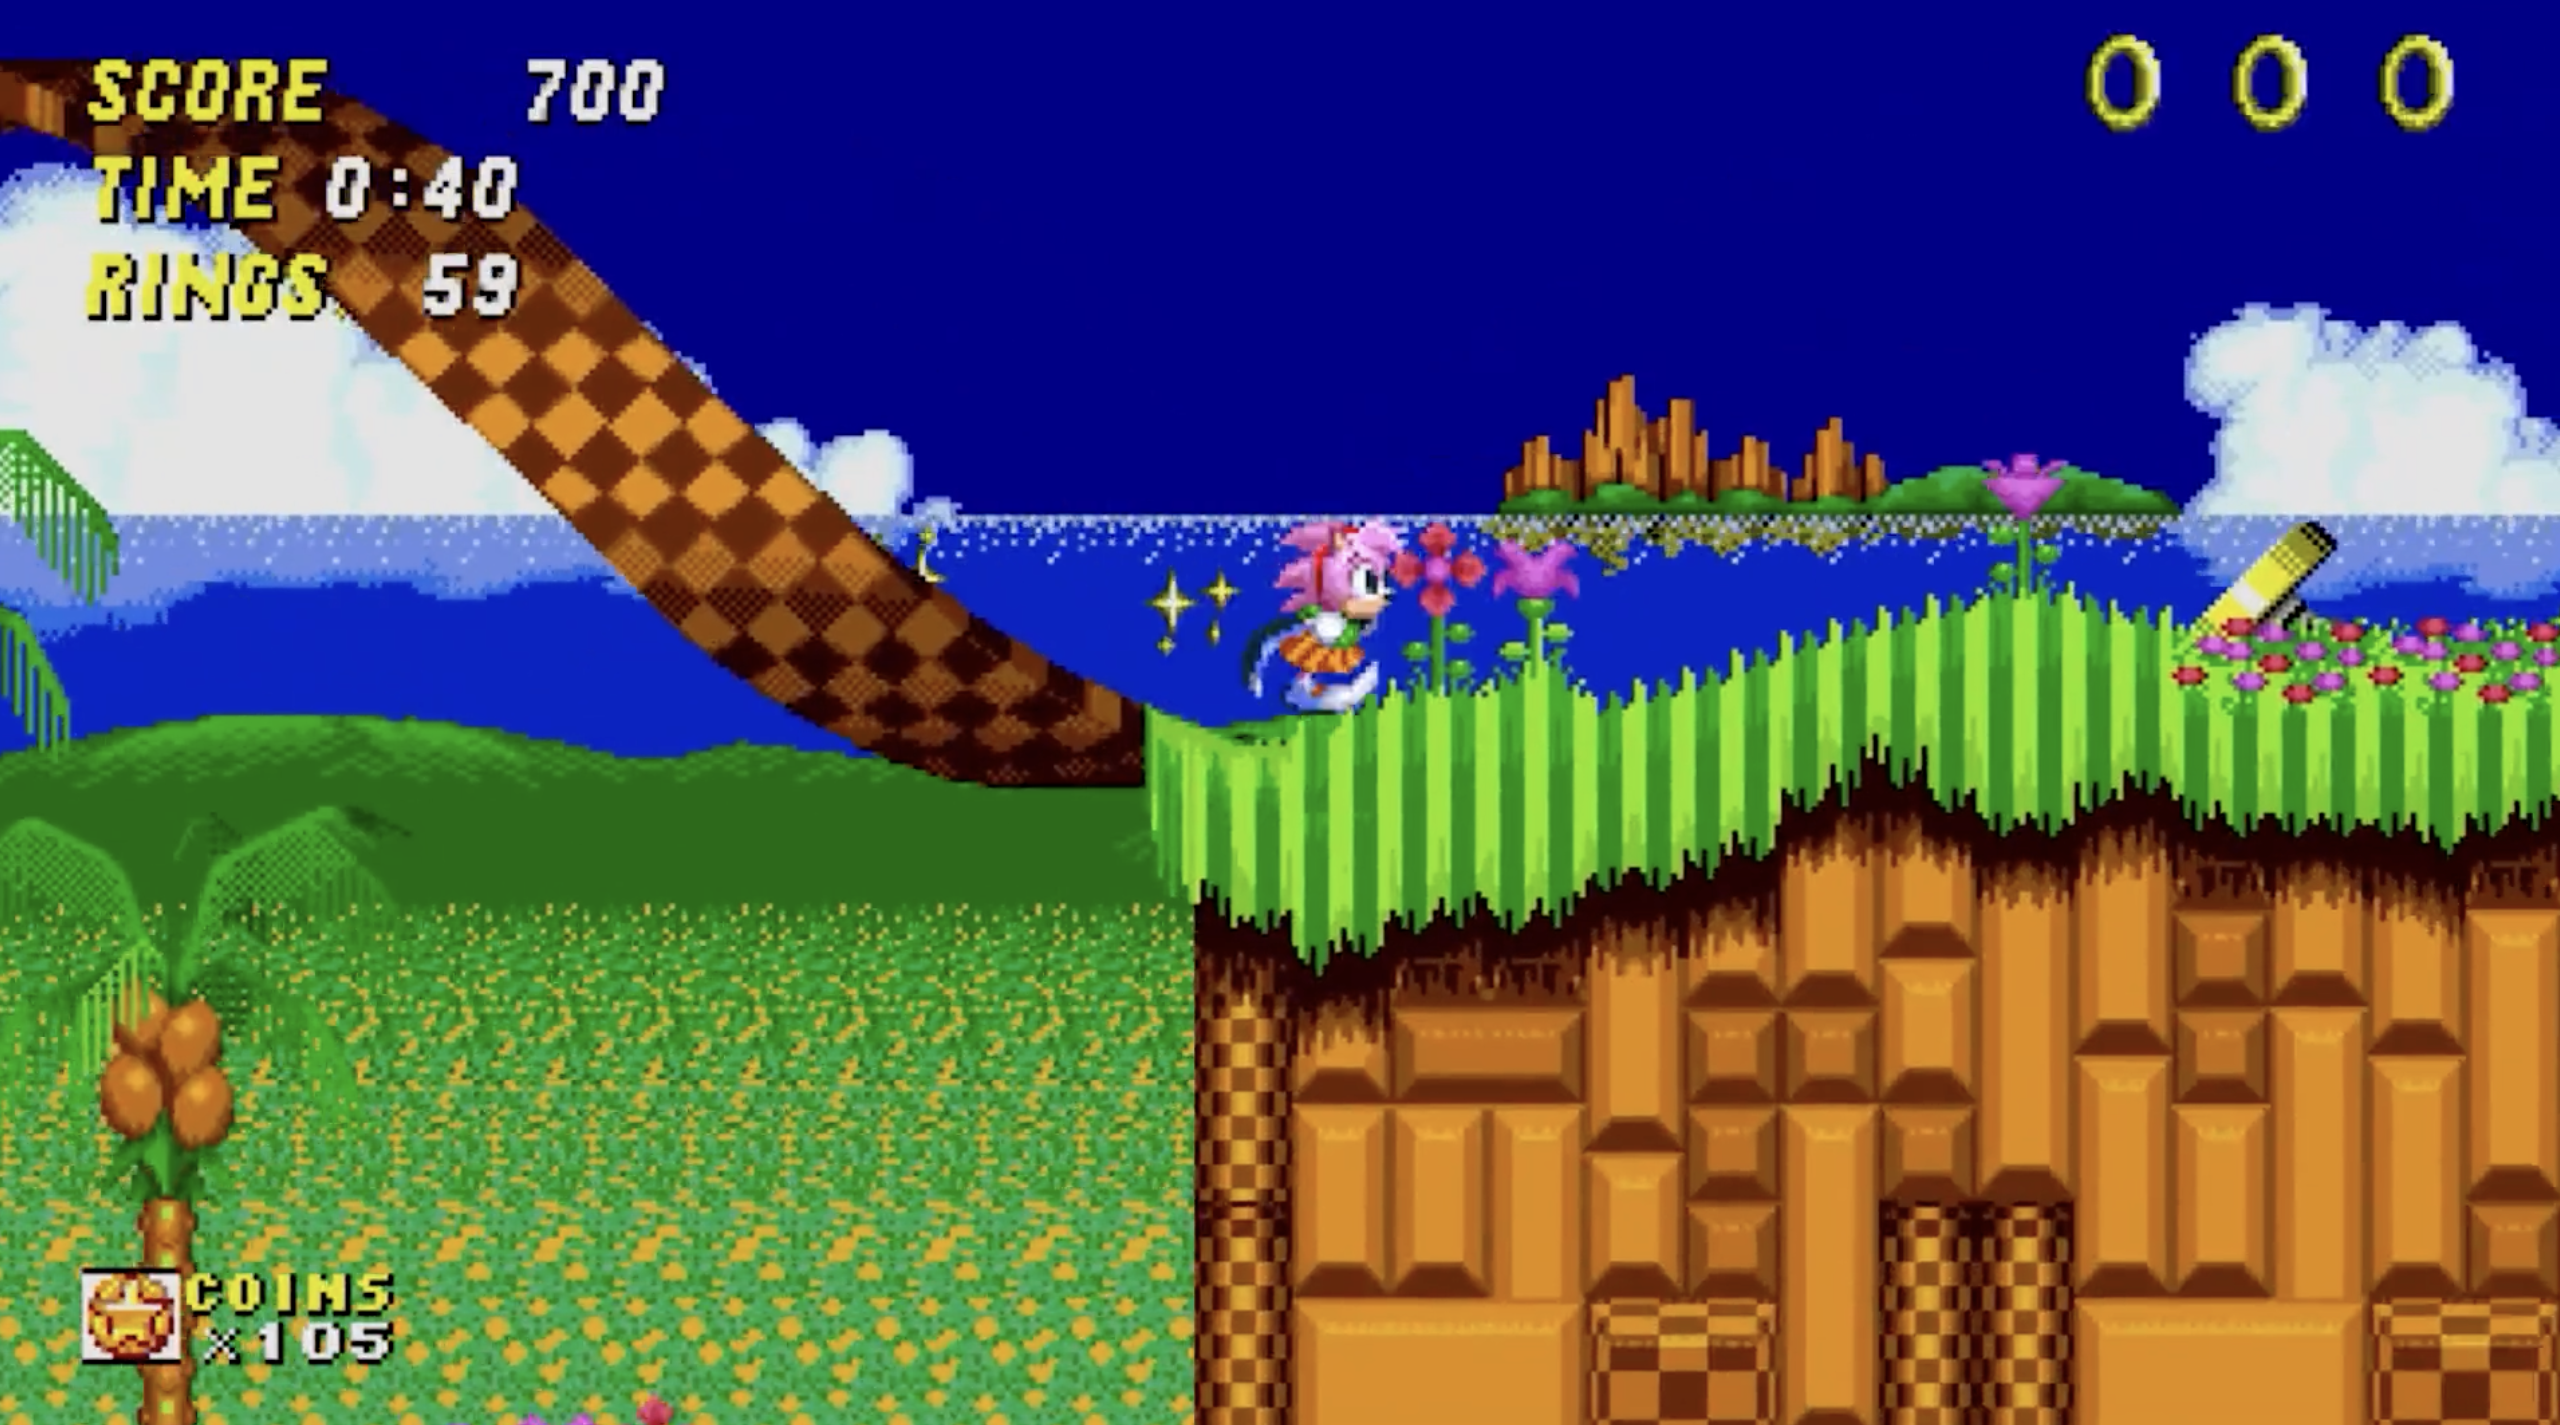 Sonic Origins Plus Revealed